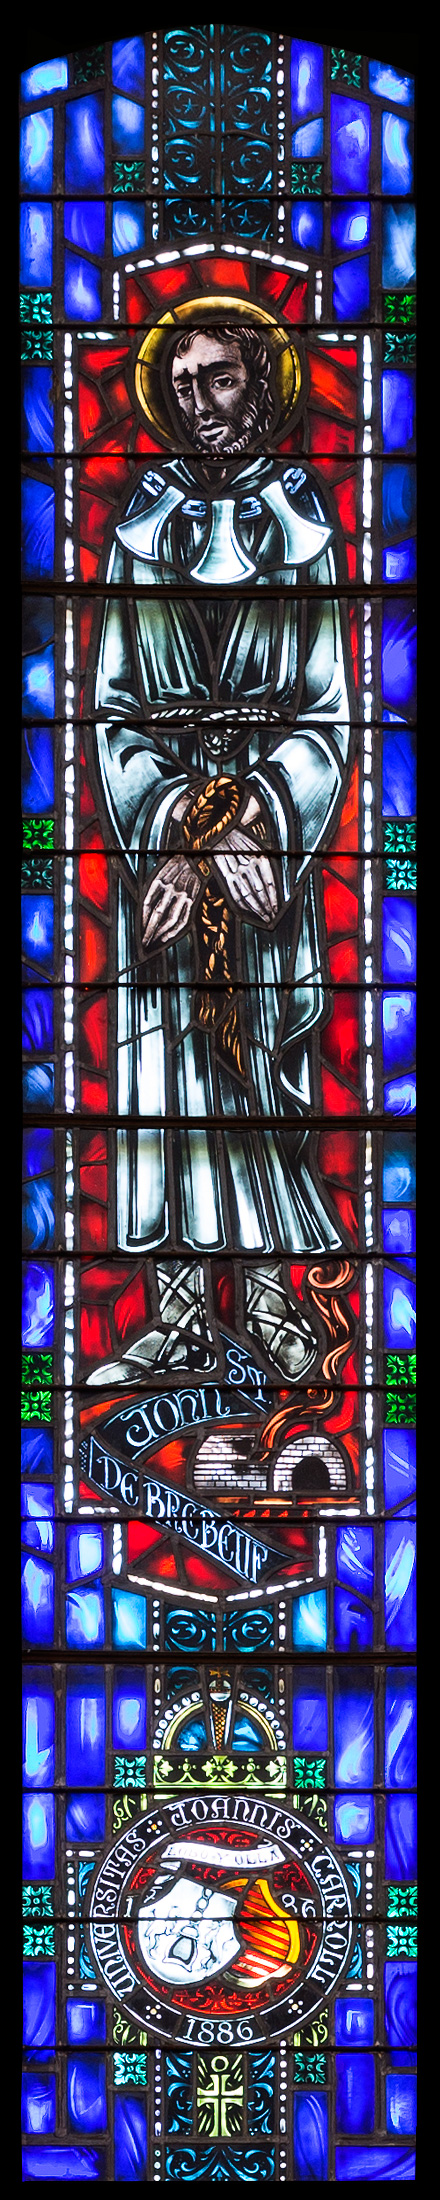 St. John de Brebeuf, John Carroll University